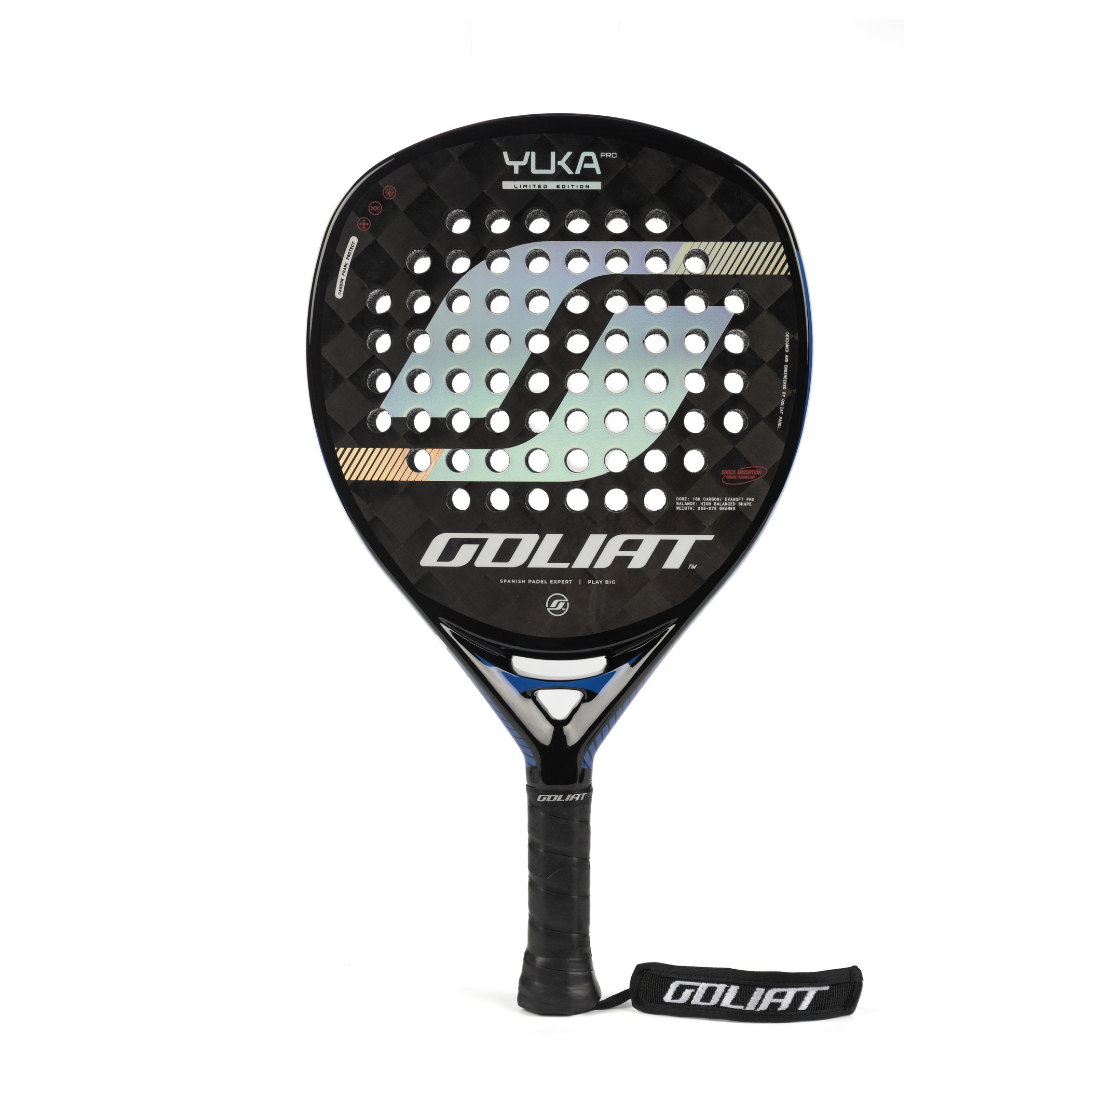 Goliat Yuka LTD padel racket (attack)